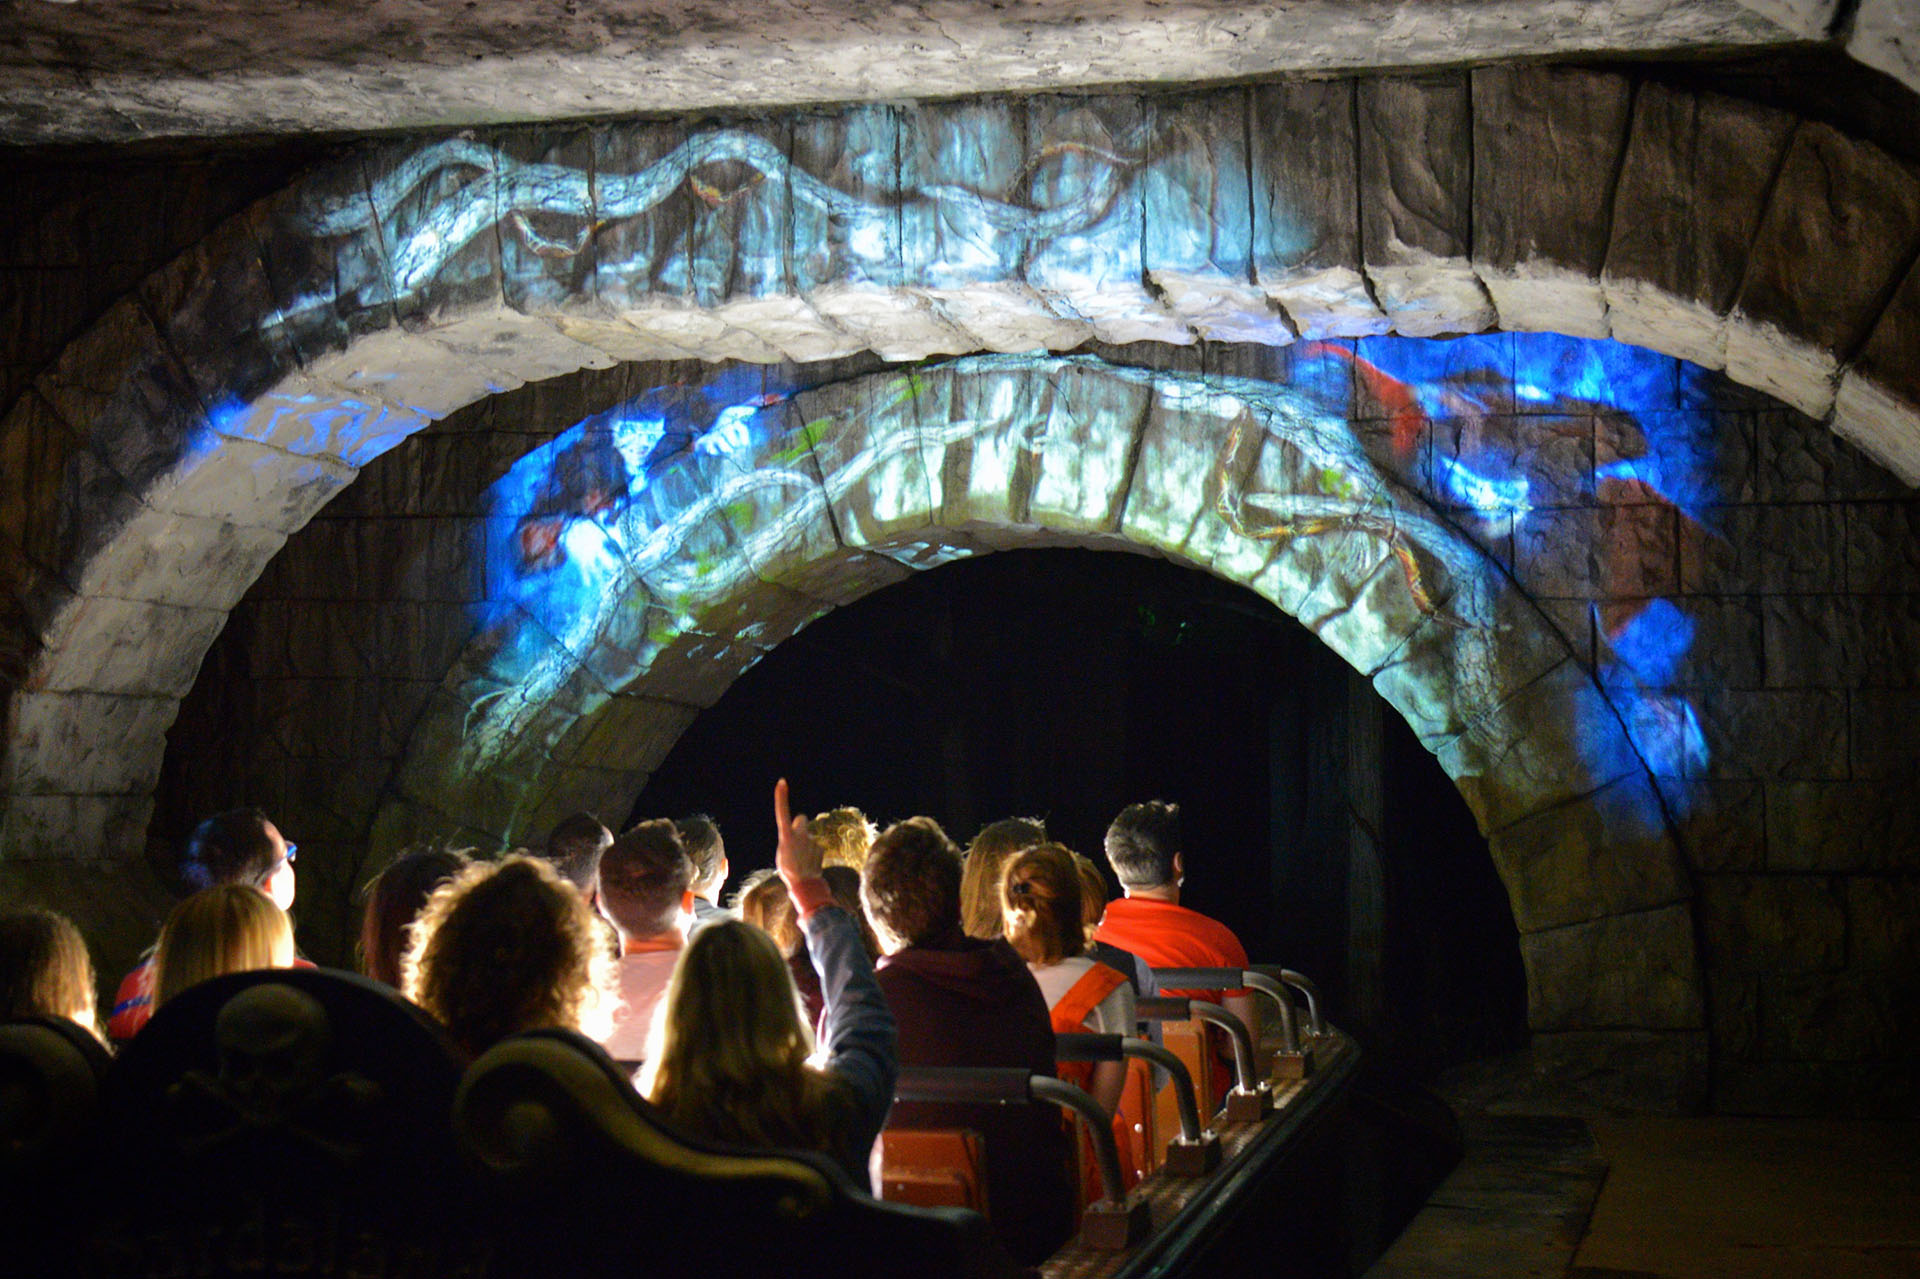 Gardaland Park - I Corsari: la Vendetta del Fantasma - Tunnel with Video Mapping